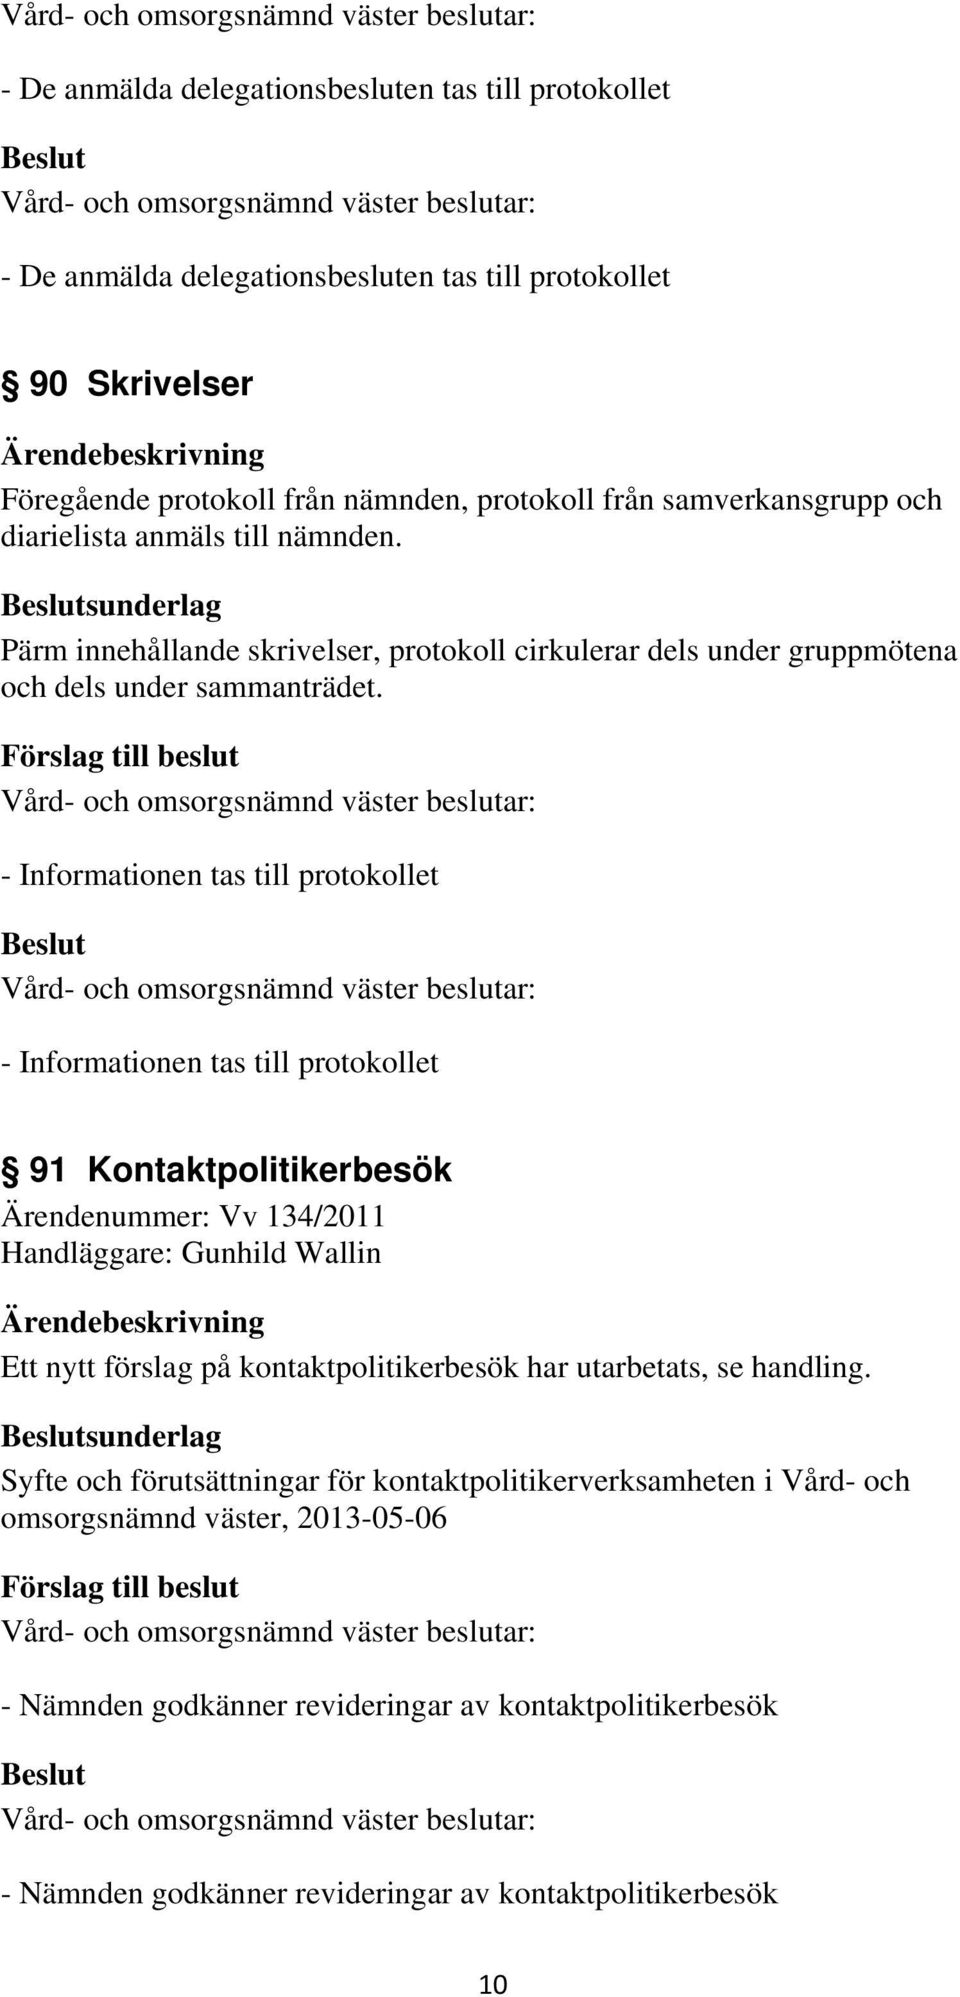 91 Kontaktpolitikerbesök Ärendenummer: Vv 134/2011 Handläggare: Gunhild Wallin Ett nytt förslag på kontaktpolitikerbesök har utarbetats, se handling.